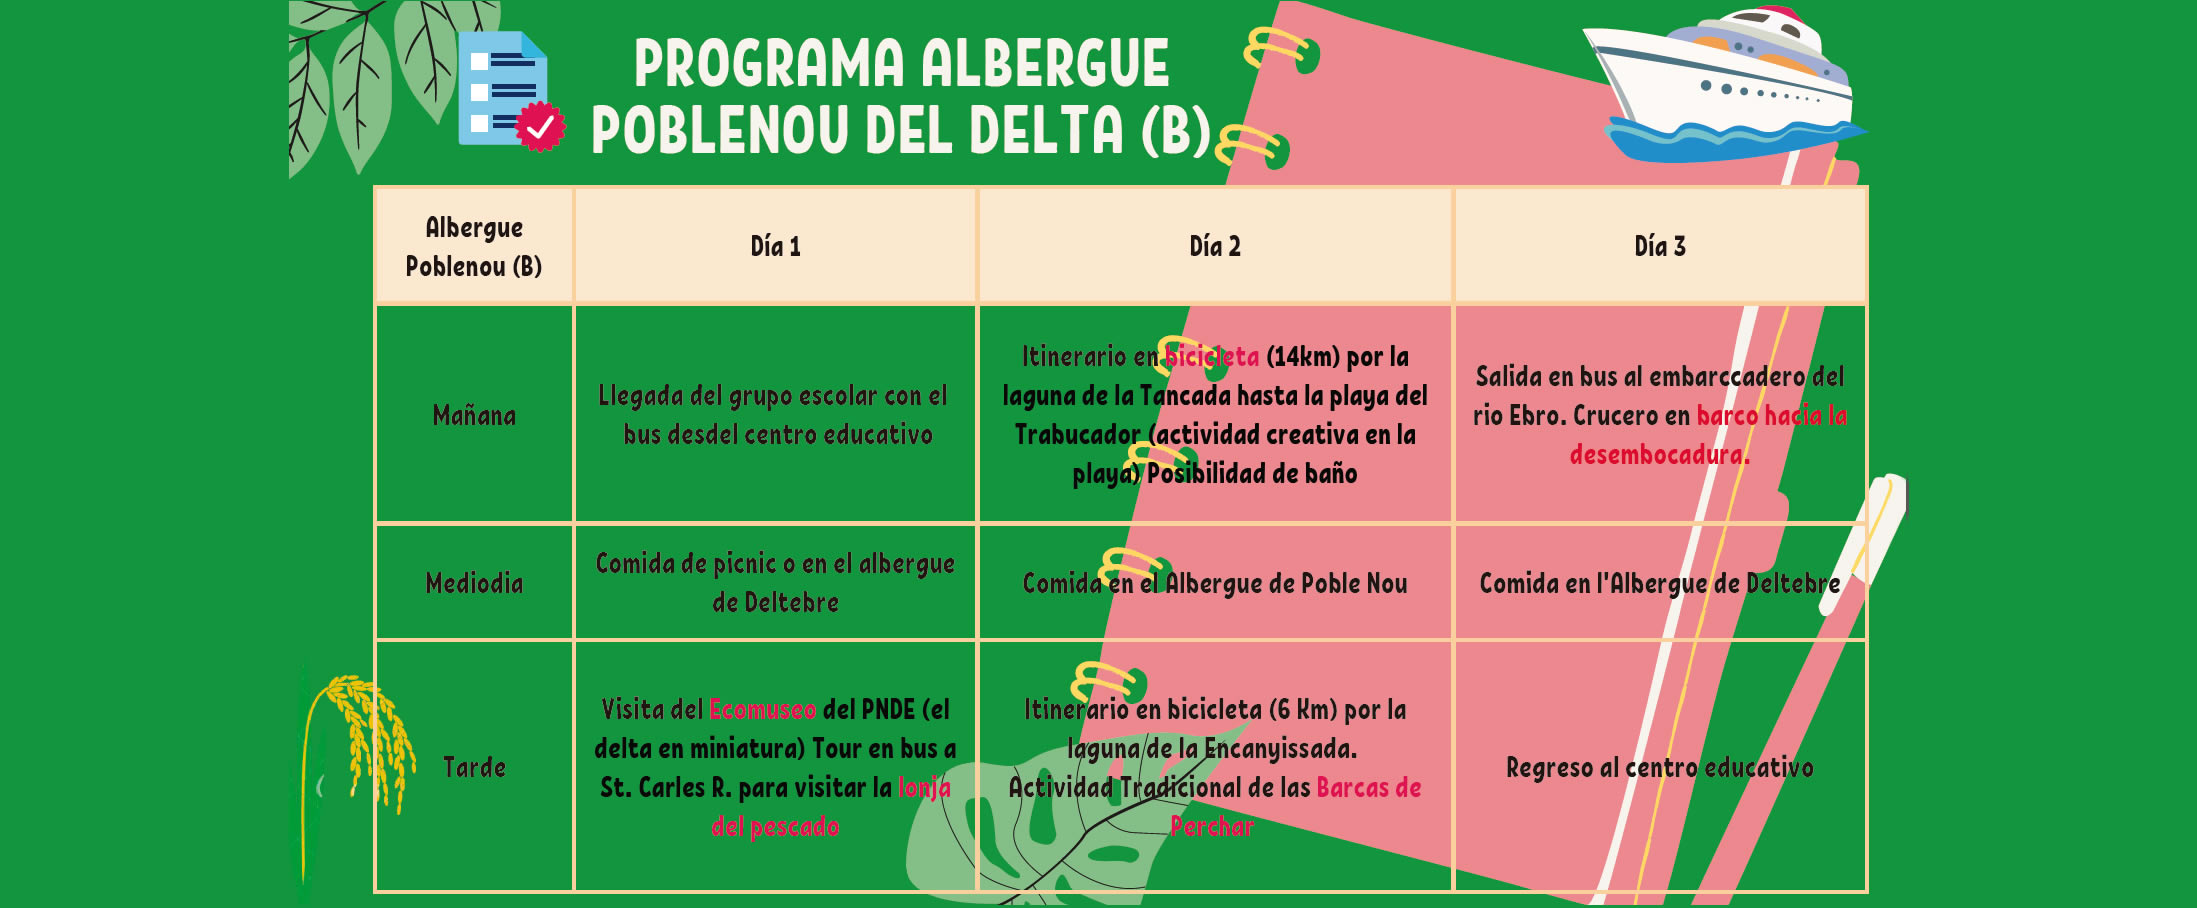 Programme scolaire à l’auberge Poble Nou del Delta (B)